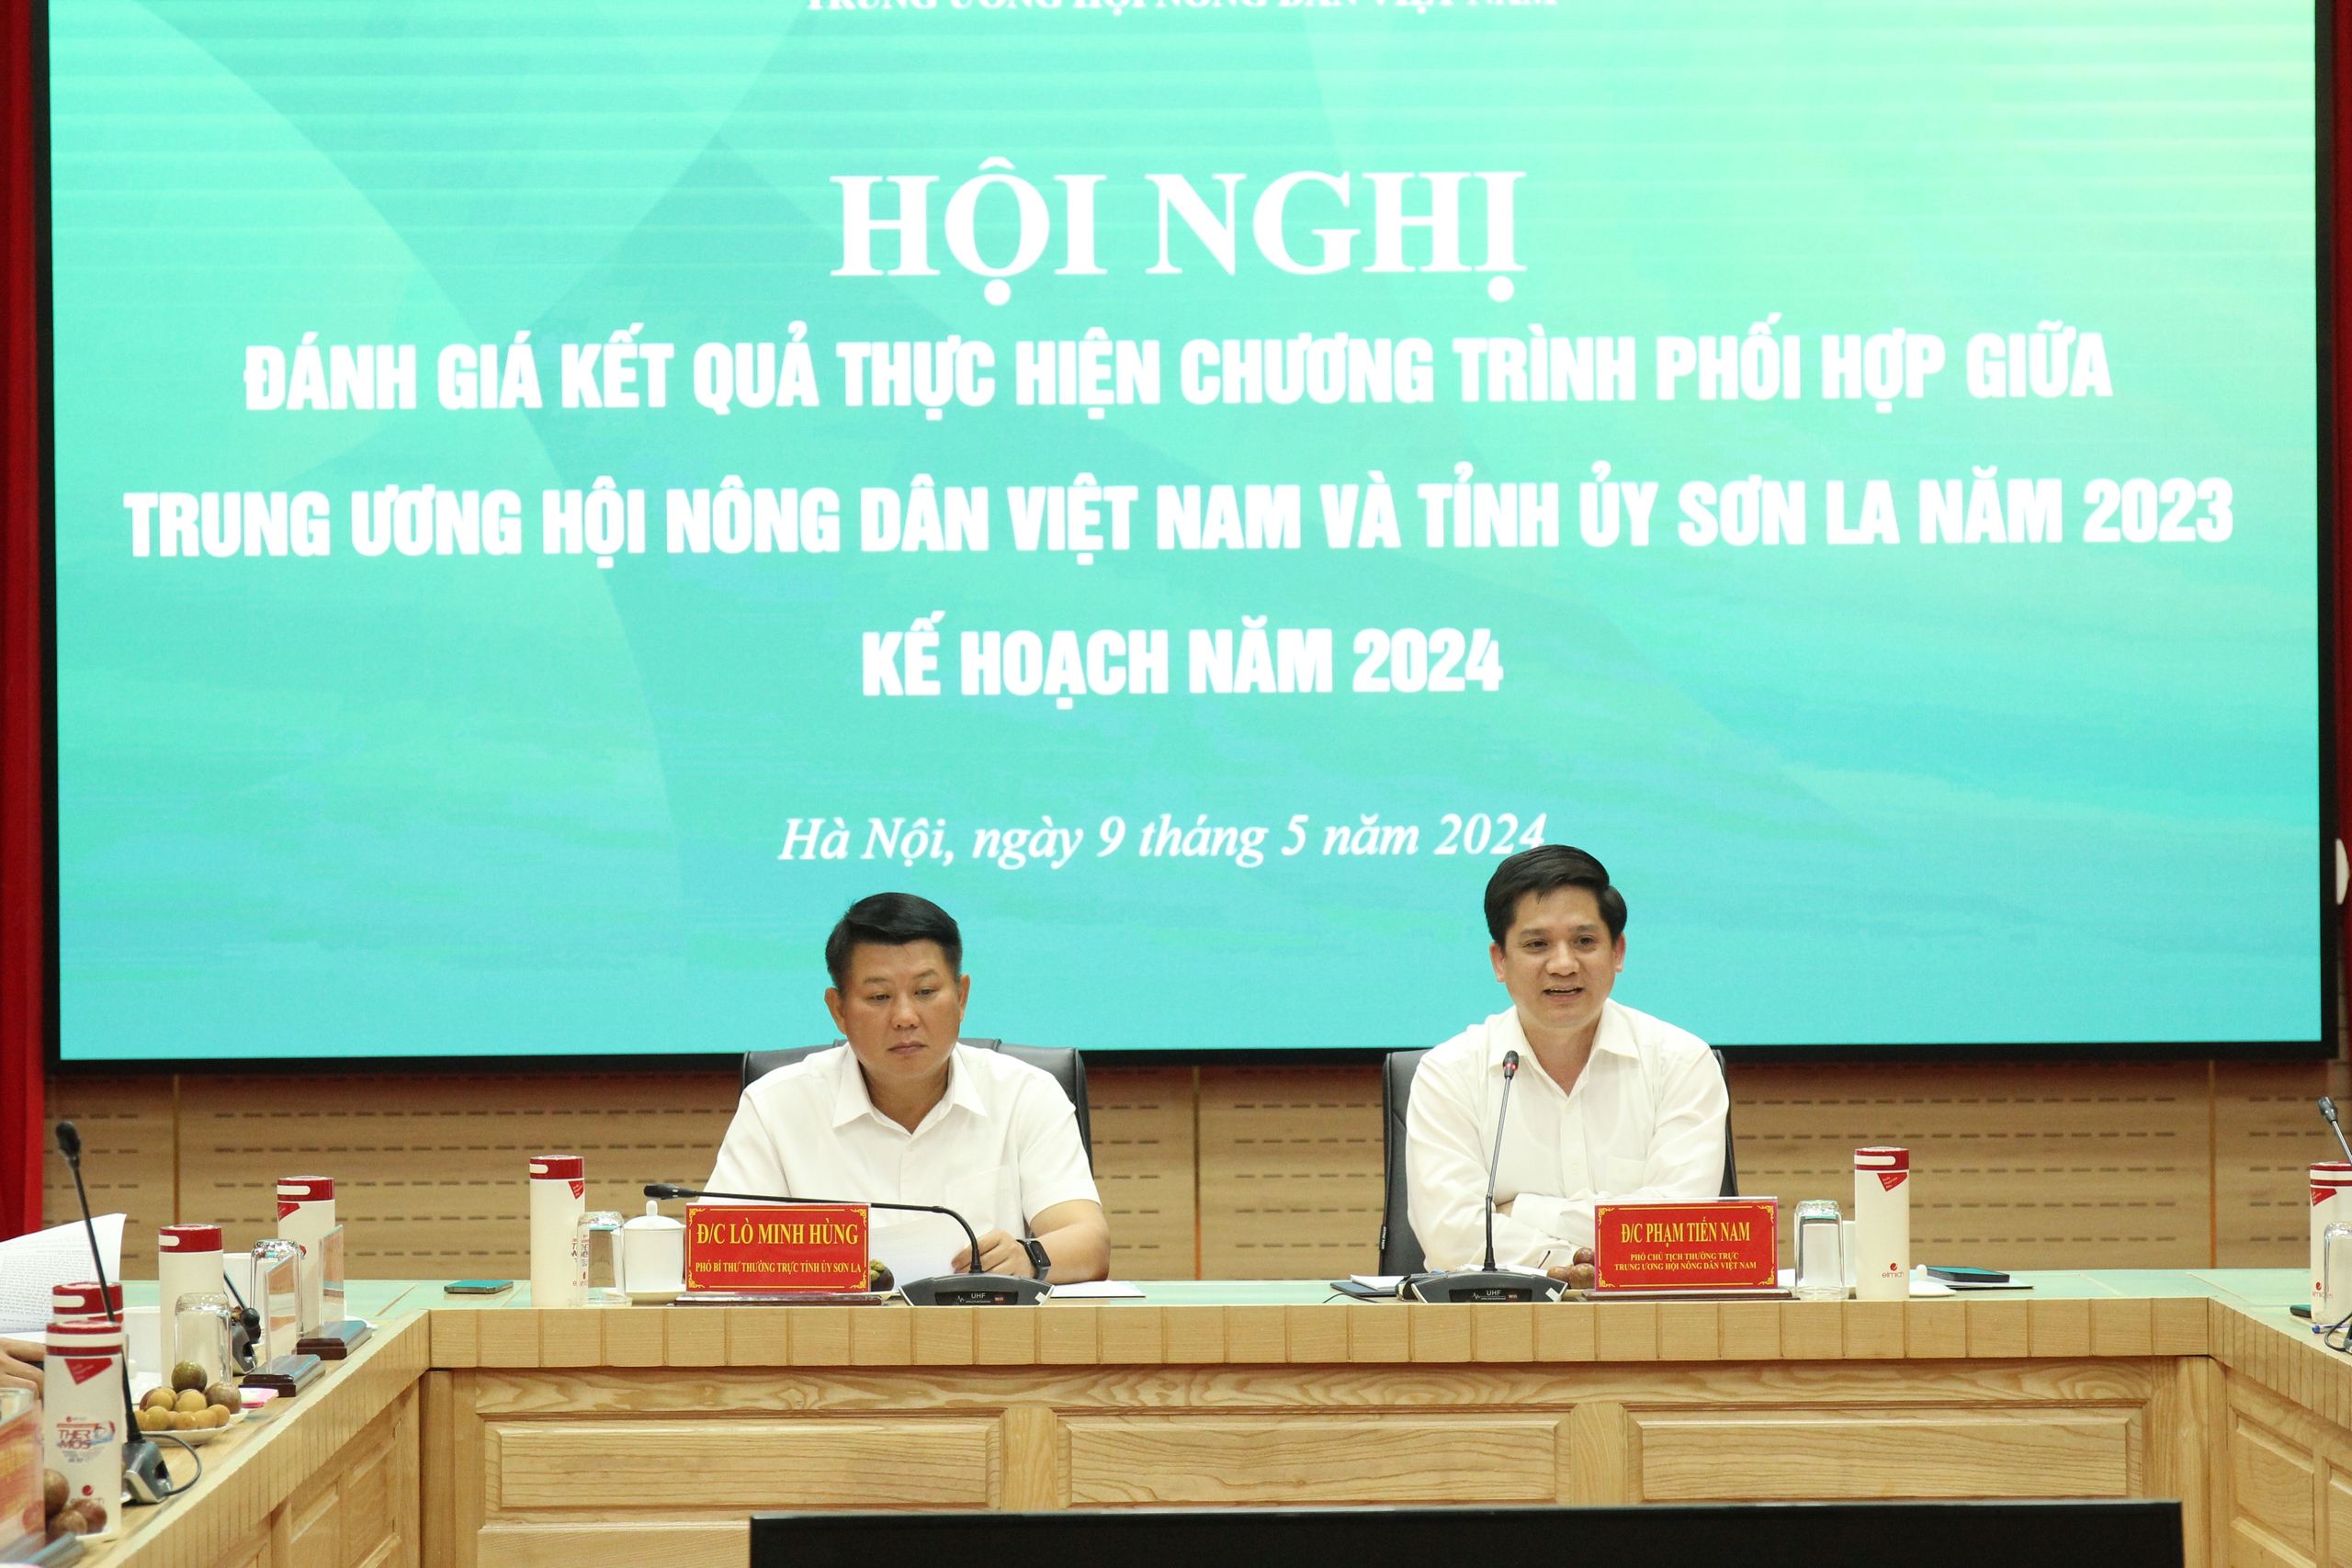 Trung ương Hội Nông dân Việt Nam, Tỉnh ủy Sơn La đánh giá kết quả thực hiện chương trình phối hợp năm 2023- Ảnh 3.